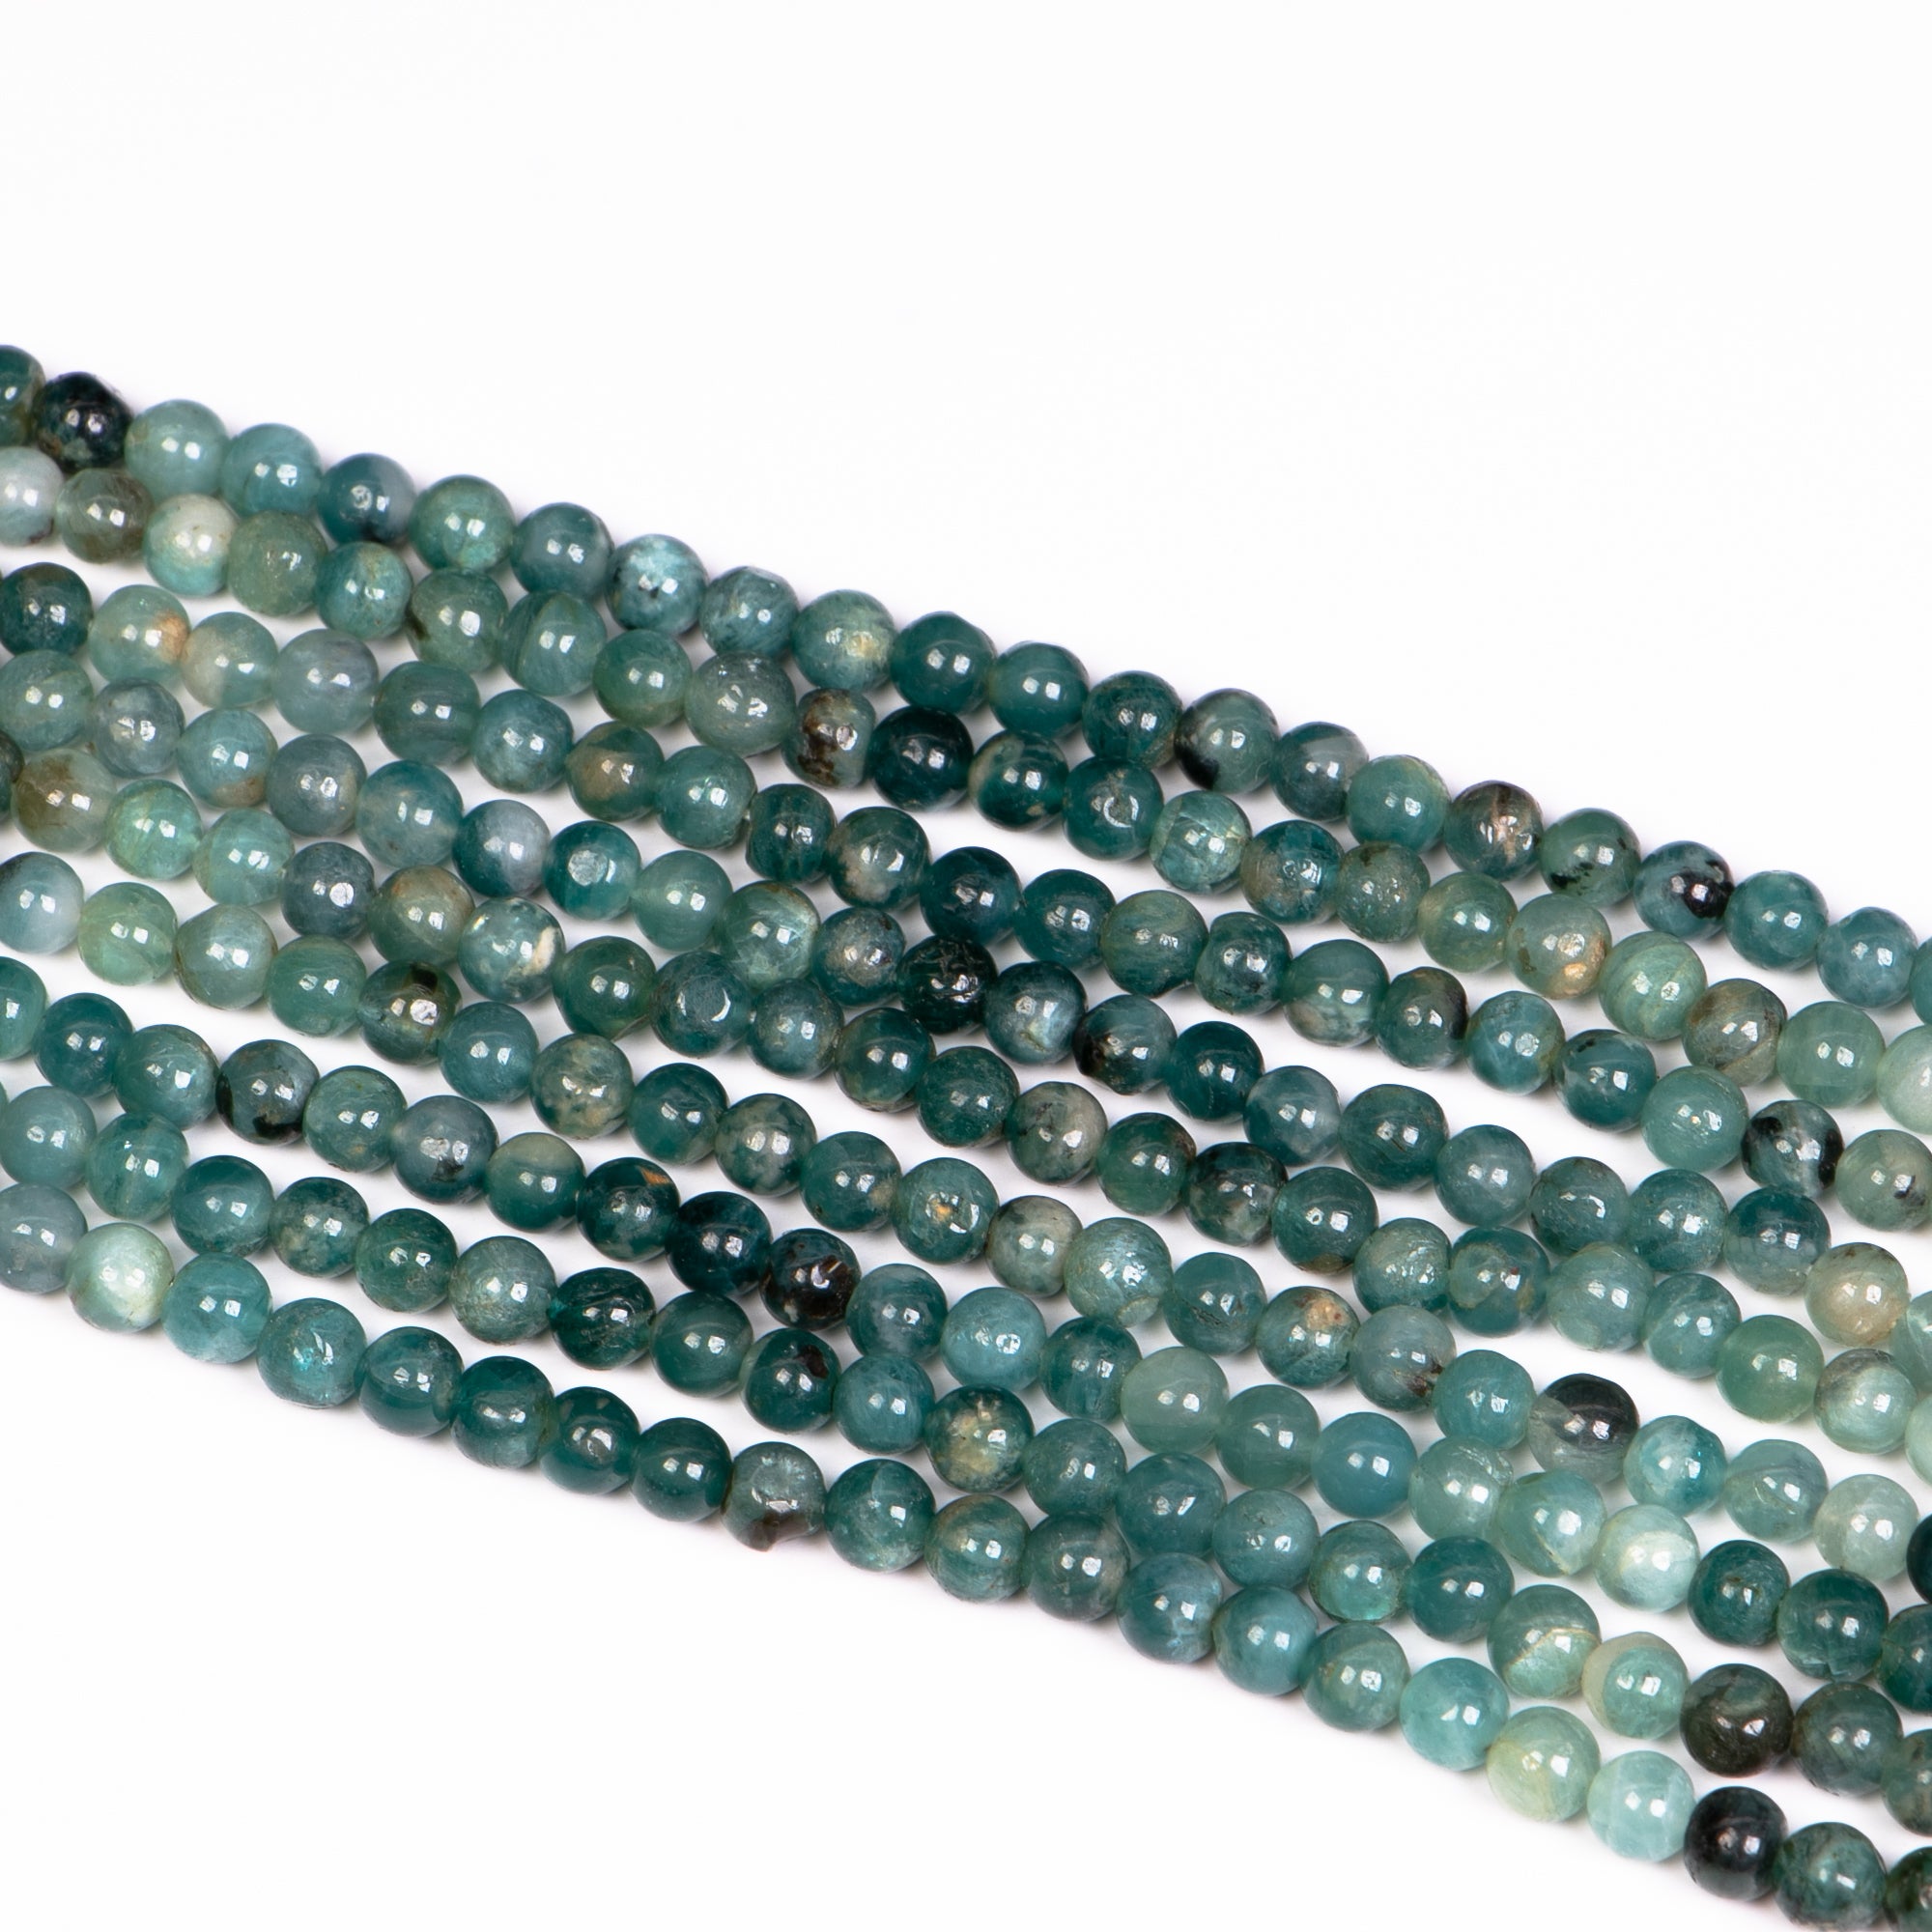 4-5 mm Grandidierite Smooth Round Beads, Loose Grandidierite Strand, Gemstone Beads